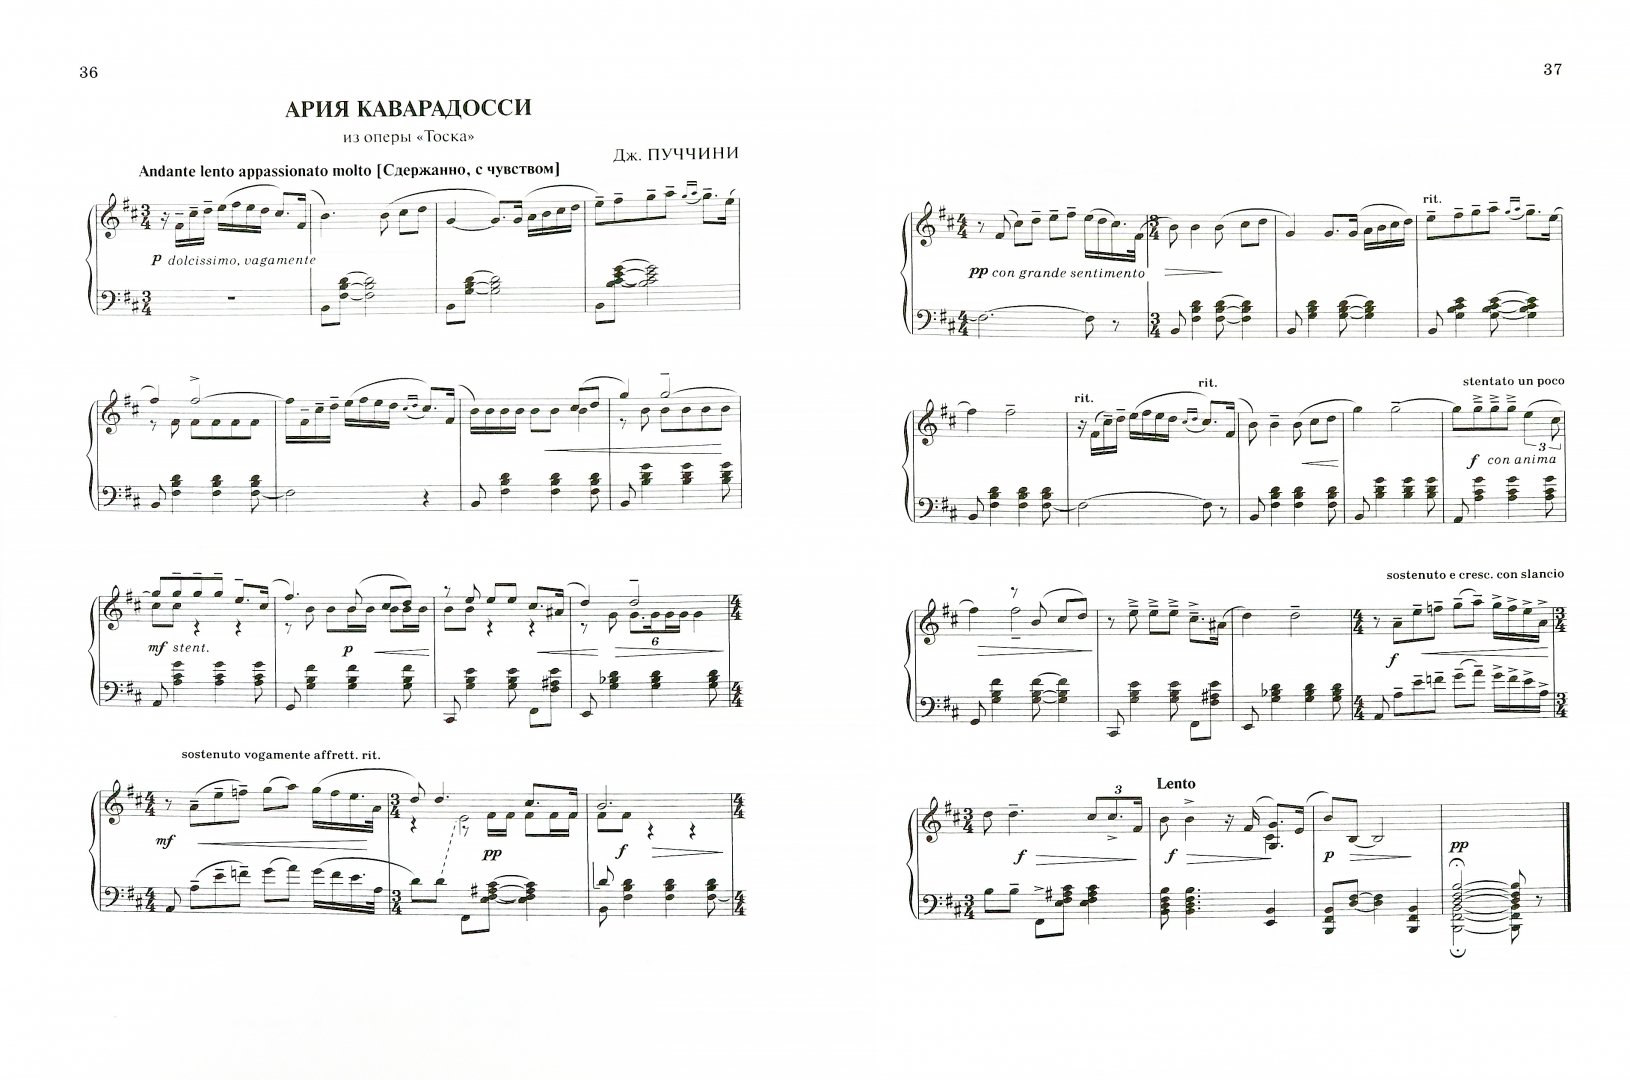 Иллюстрация 1 из 17 для 25 хитов классической музыки для фортепиано | Лабиринт - книги. Источник: Лабиринт